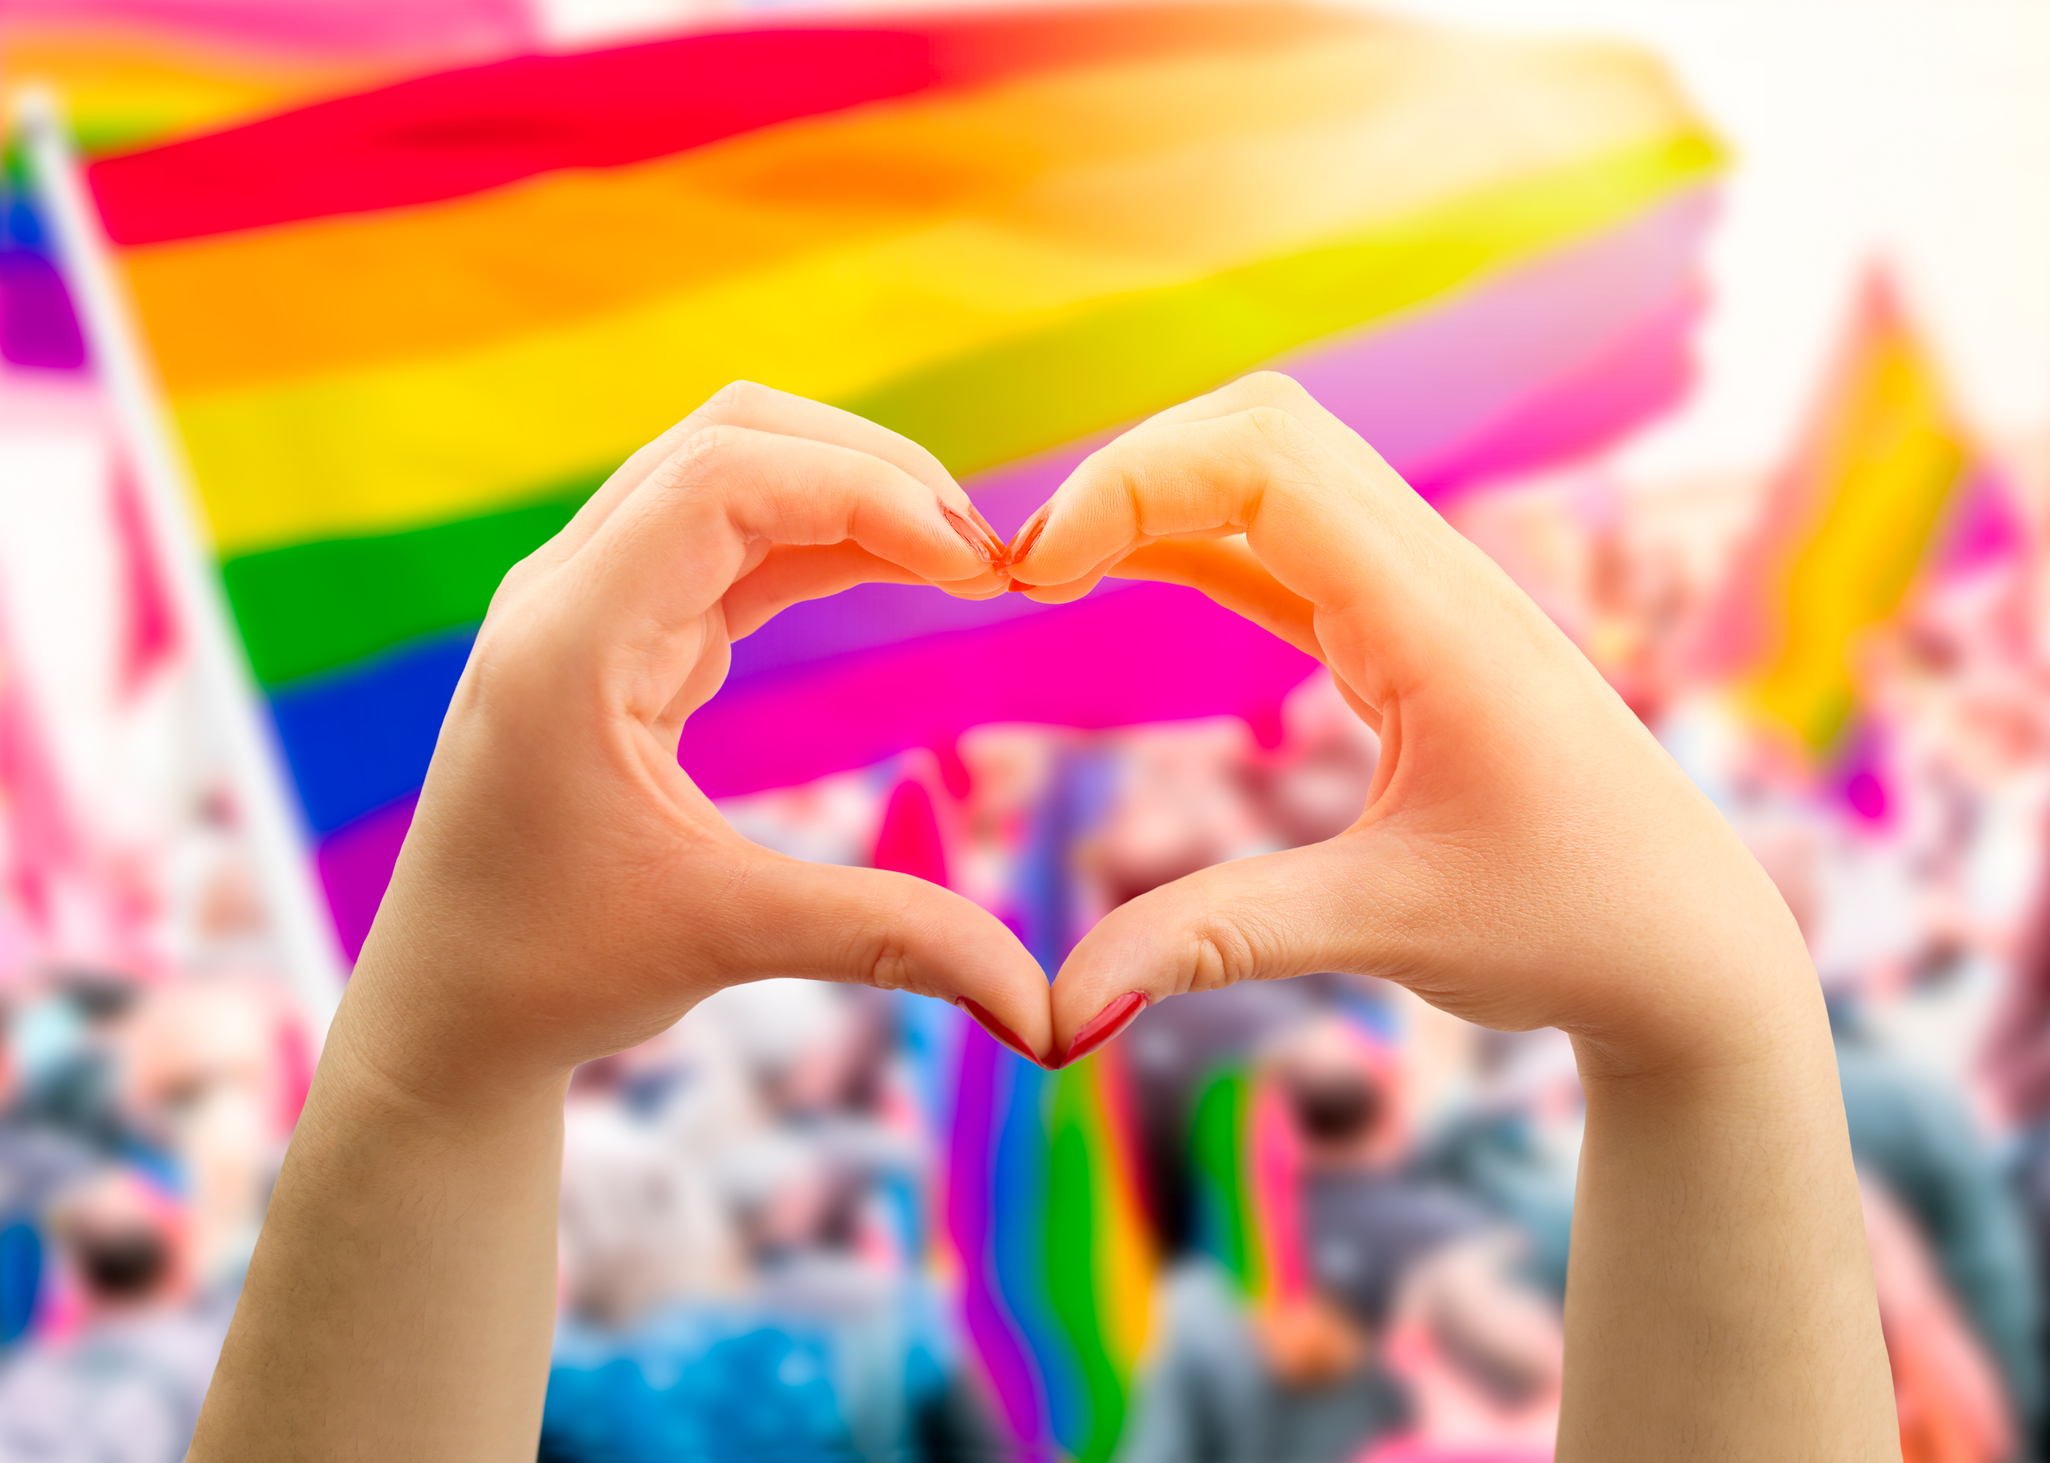 Biserica ia act ”cu adâncă durere” de faptul că în Duminica Părinților și Copiilor se organizează o paradă gay la Iași